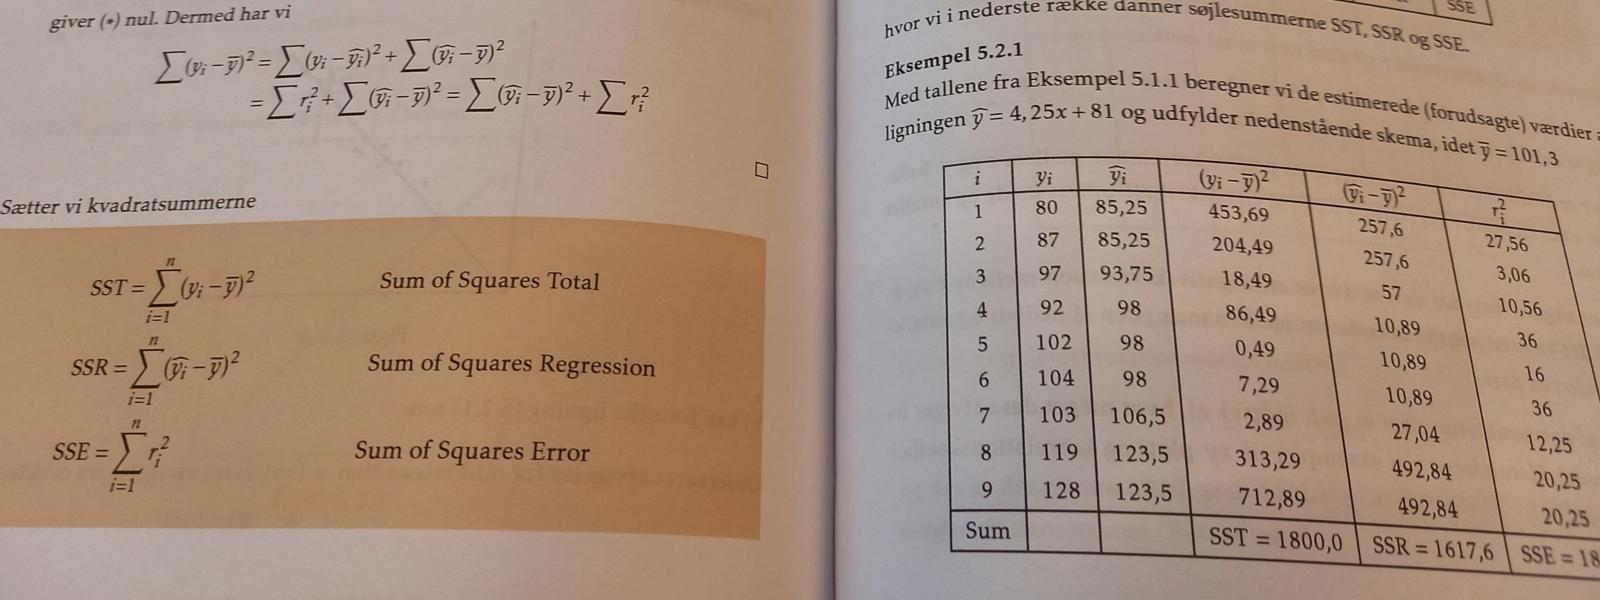 Et opslag i en matematikbog